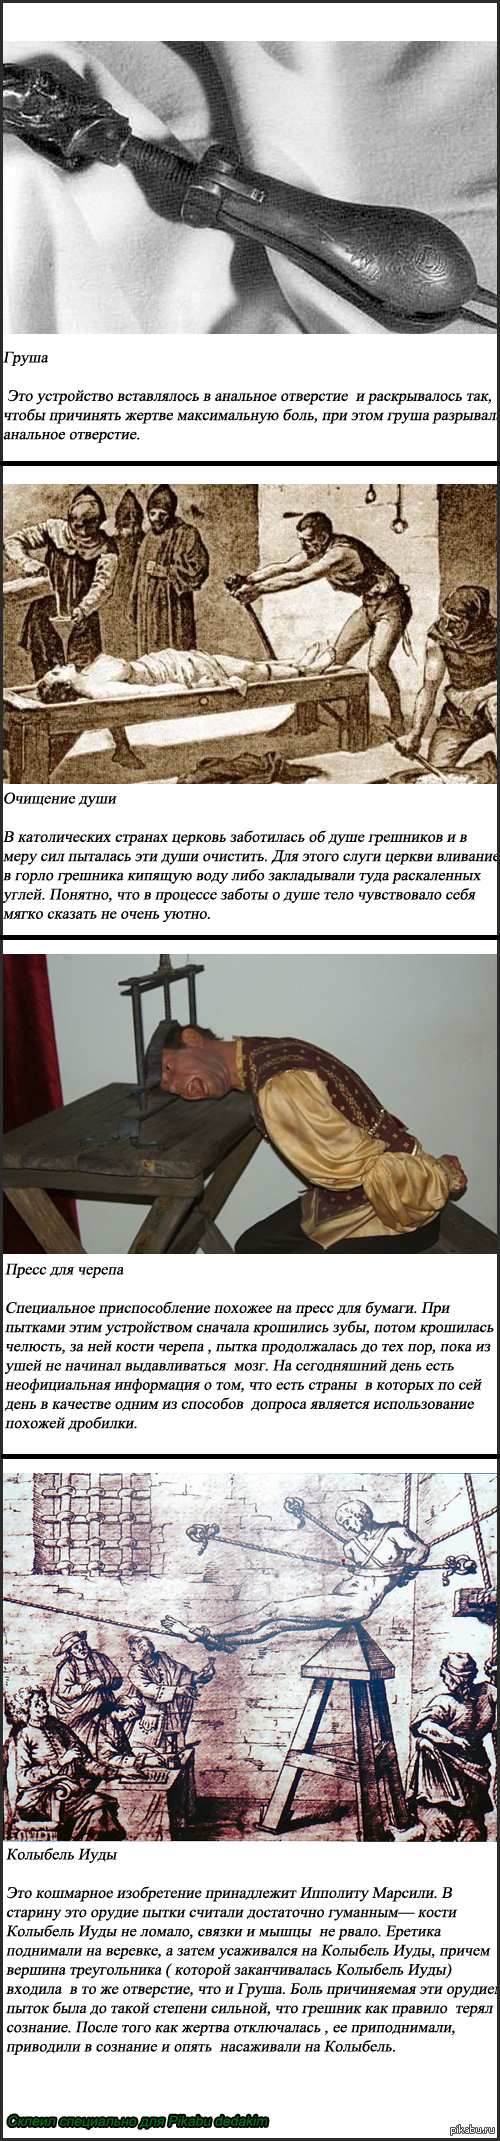     [ 3] ()   )      http://pikabu.ru/story/samyie_strashnyie_pyitki_inkvizitsii_chast_2_dlinnopost_895061